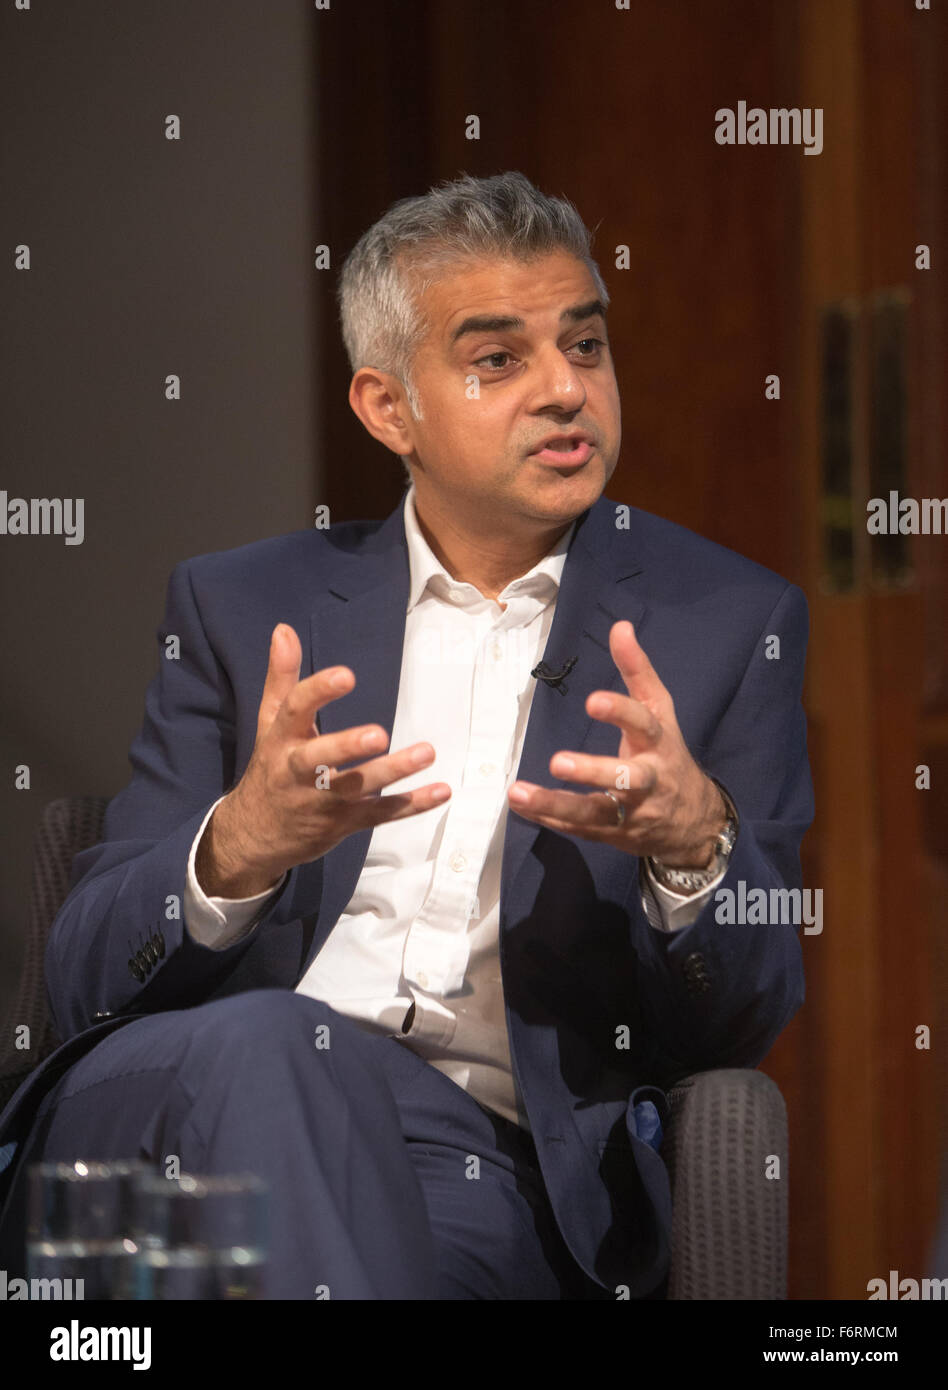 London Bürgermeisterkandidat für Labour, Sadiq Khan spricht bei einer Veranstaltung über seine Pläne für London, wenn gewählt Stockfoto